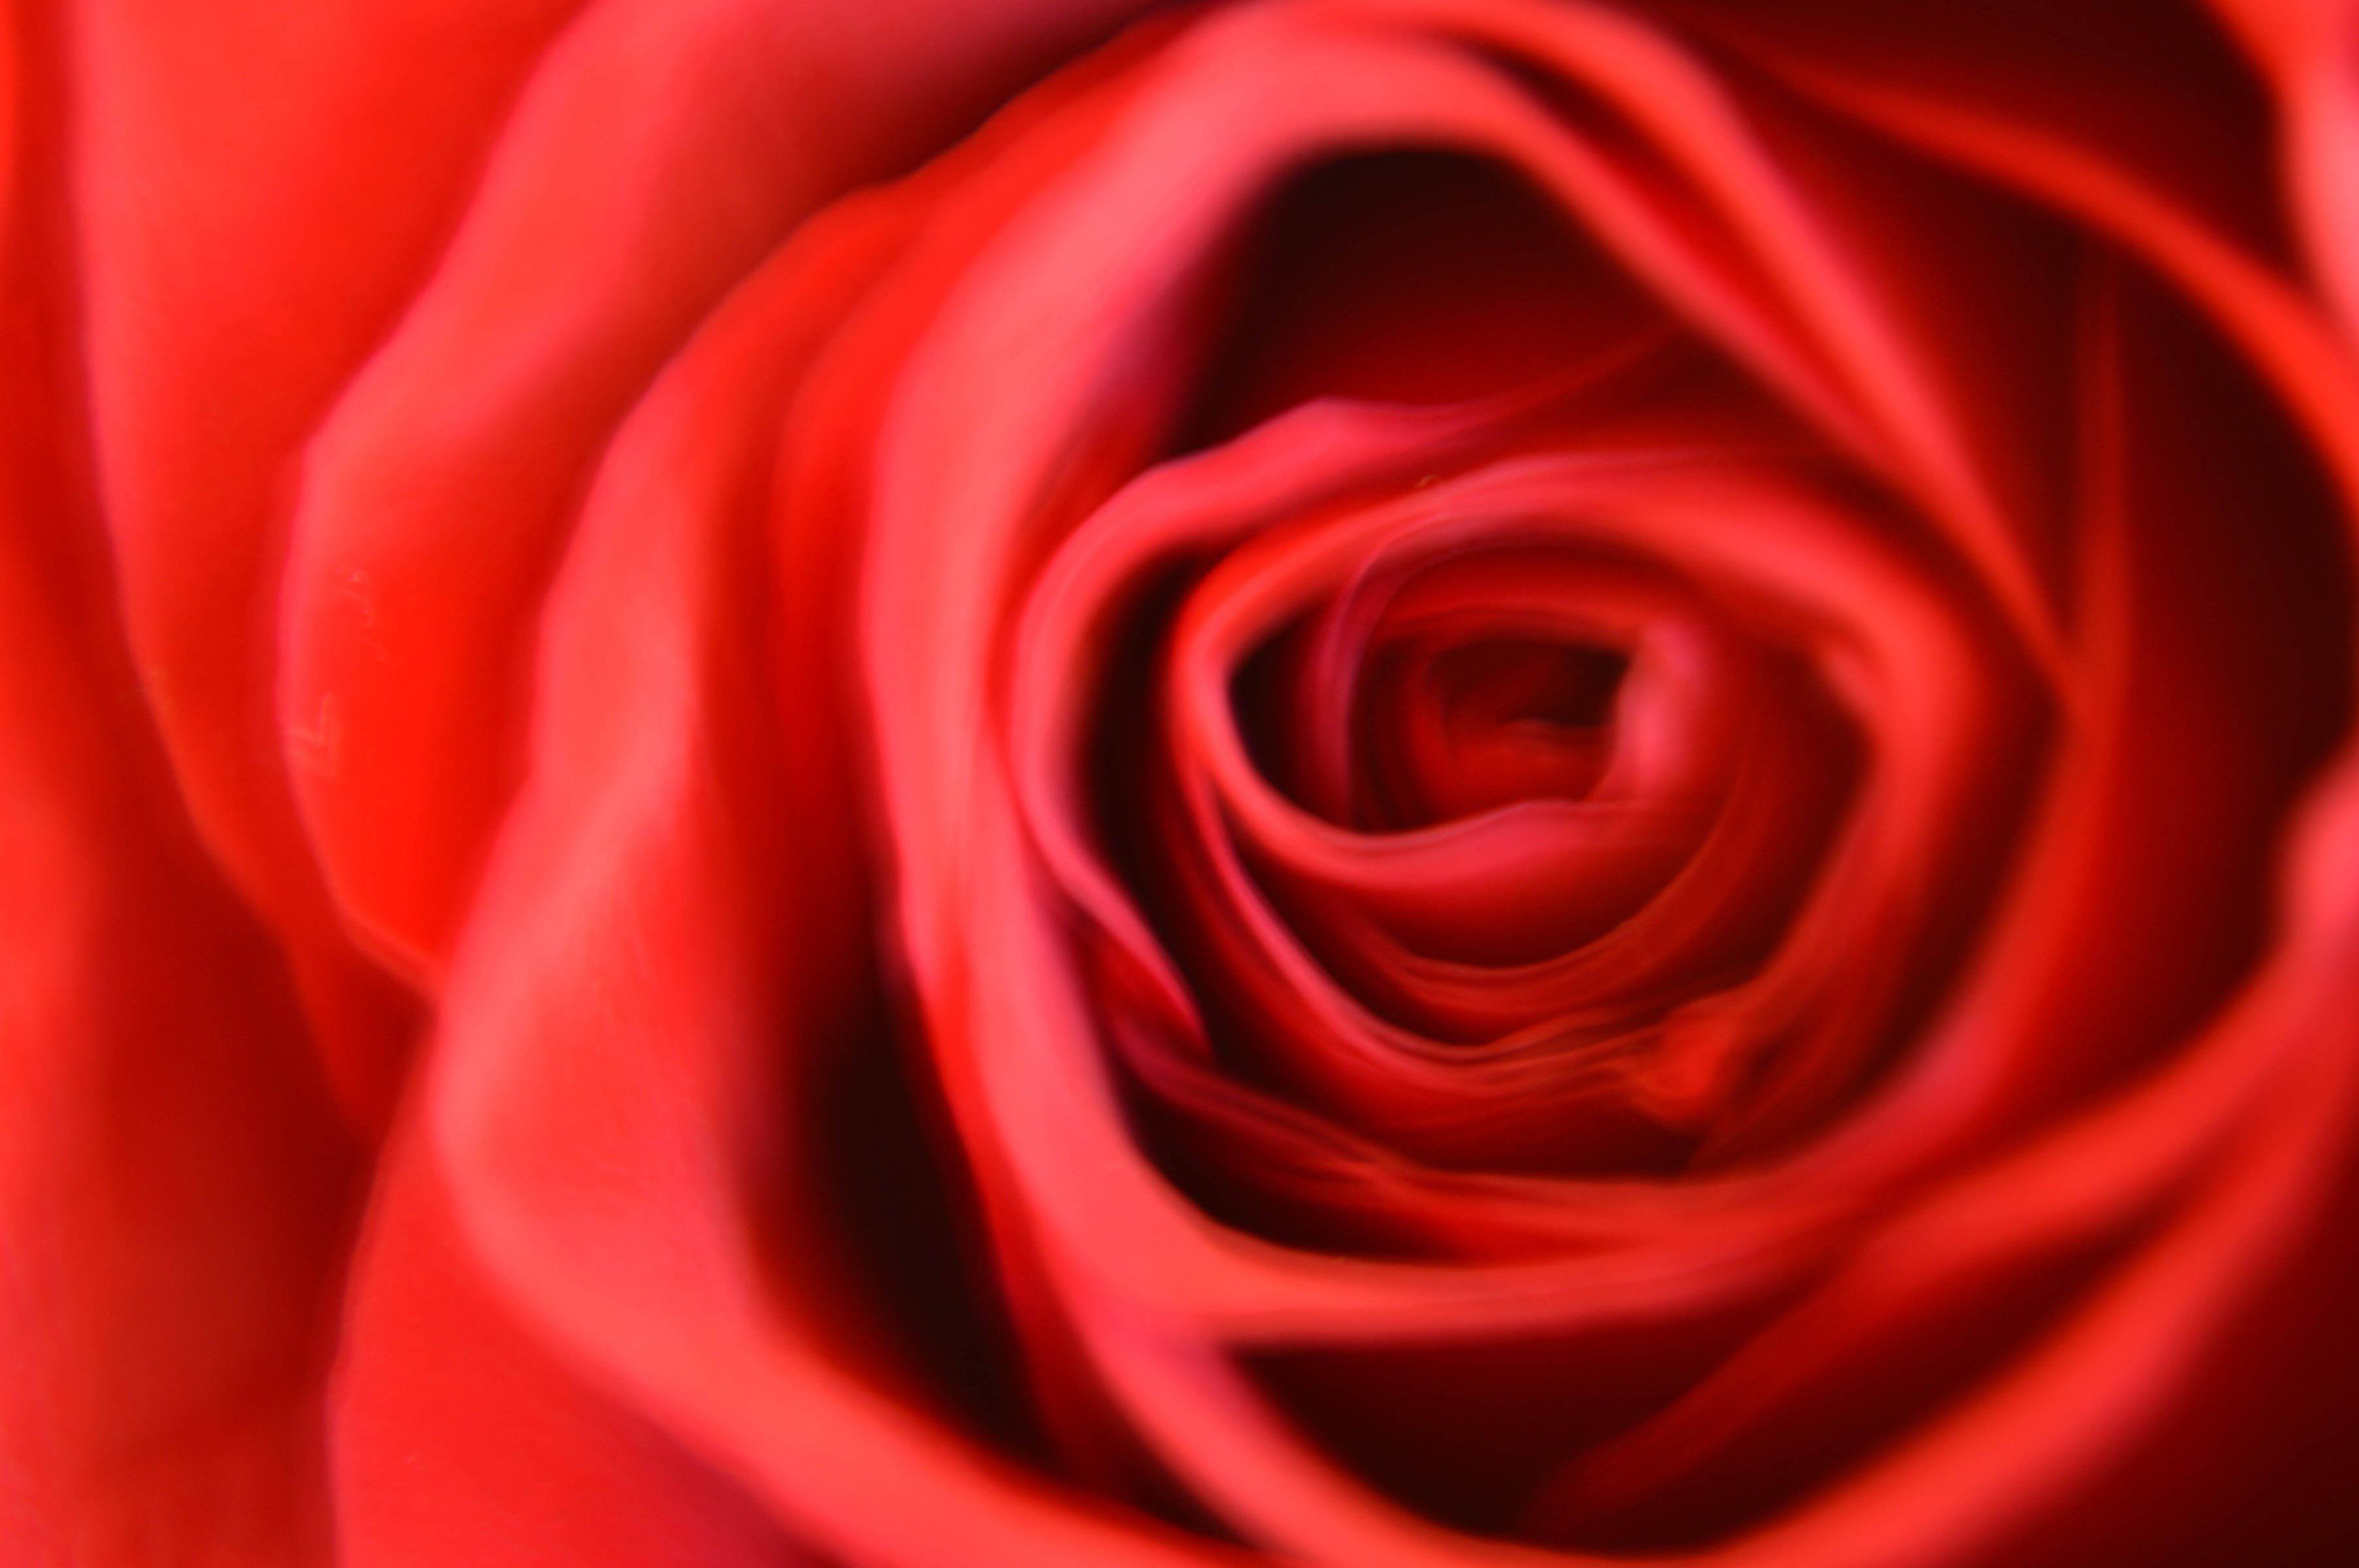 blurred rose